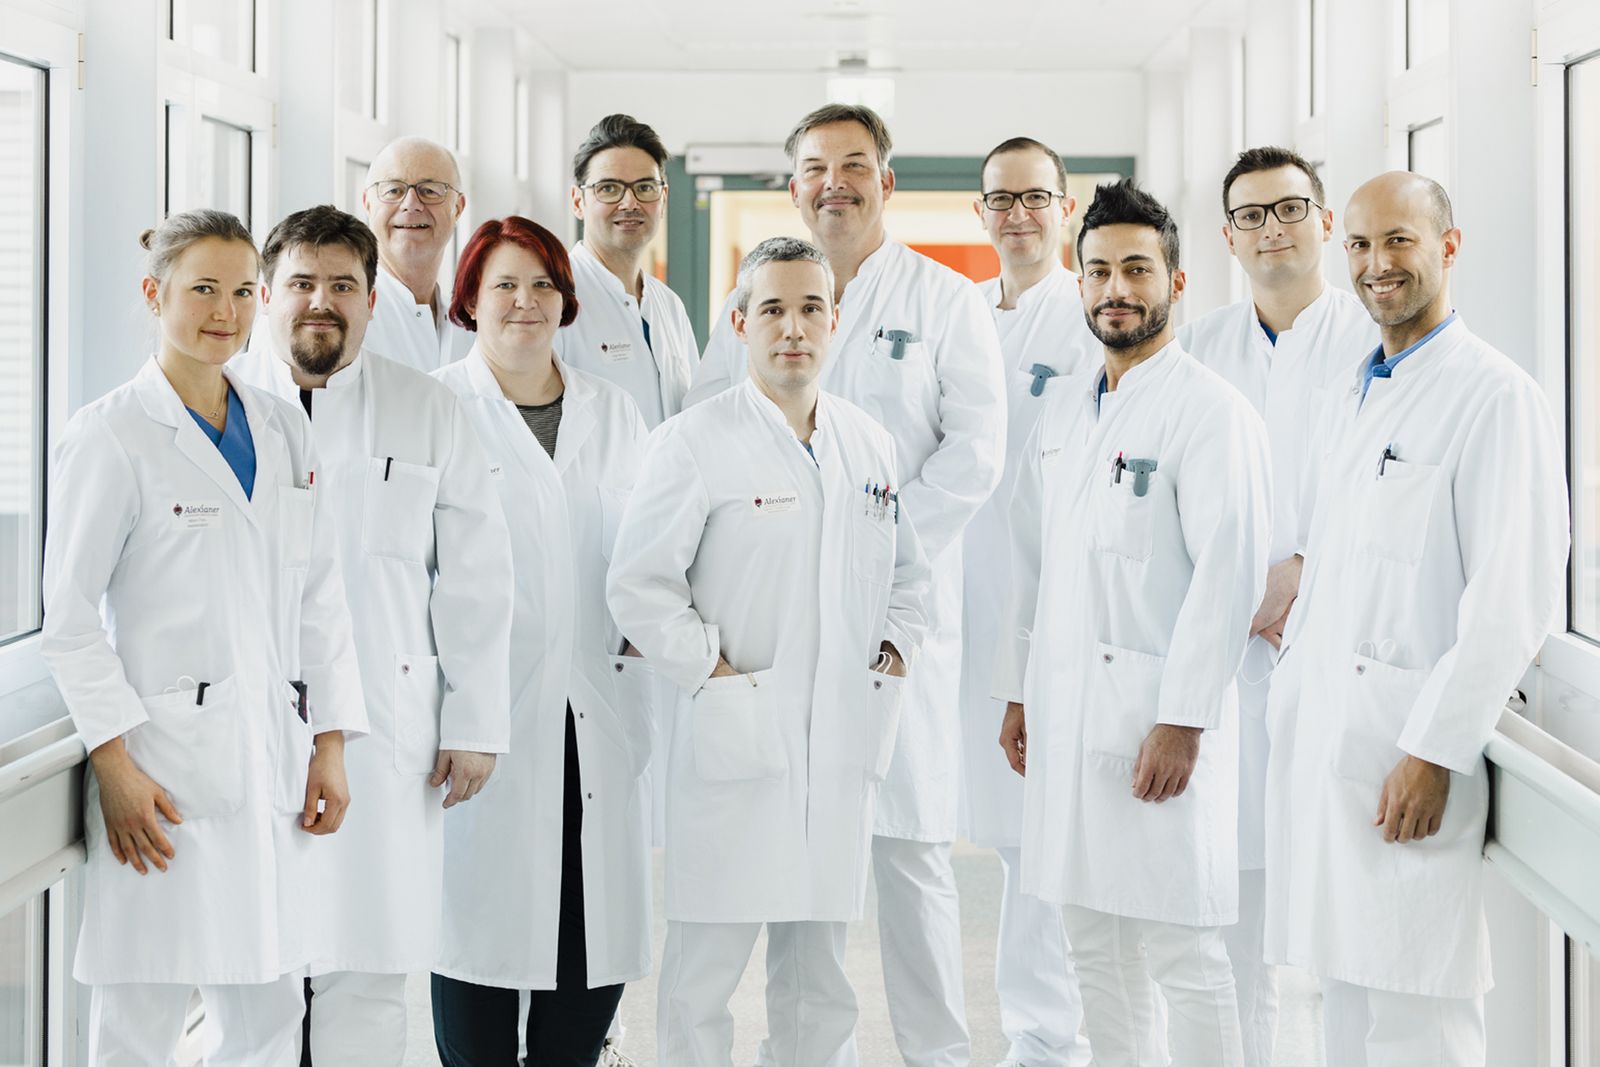 Das Team der Abteilung unter der Leitung von Chefarzt Dr. Markus Graf